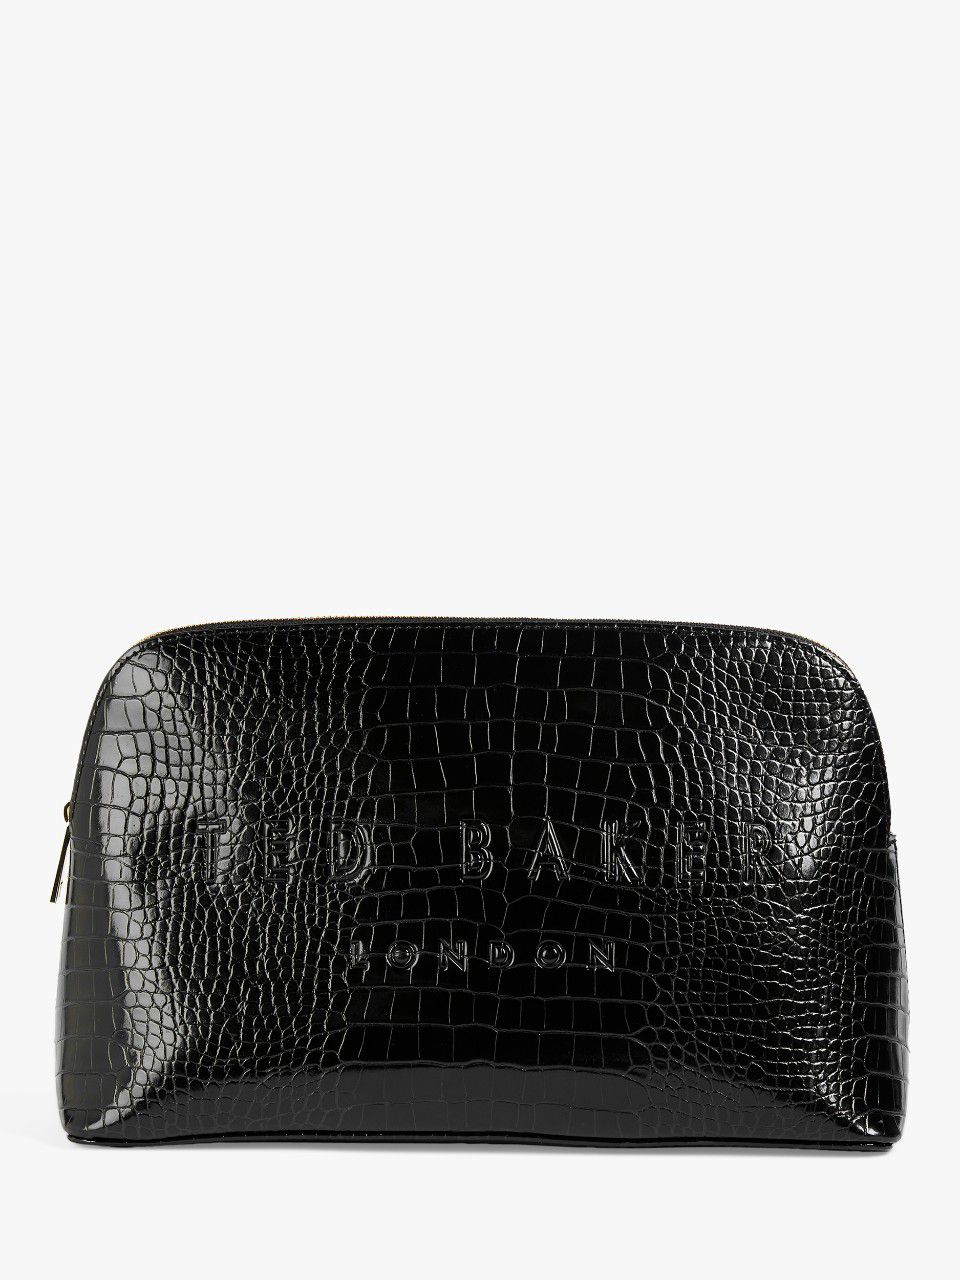 Ted Baker Crocana Croc Effect Makeup Bag, Black, One Size